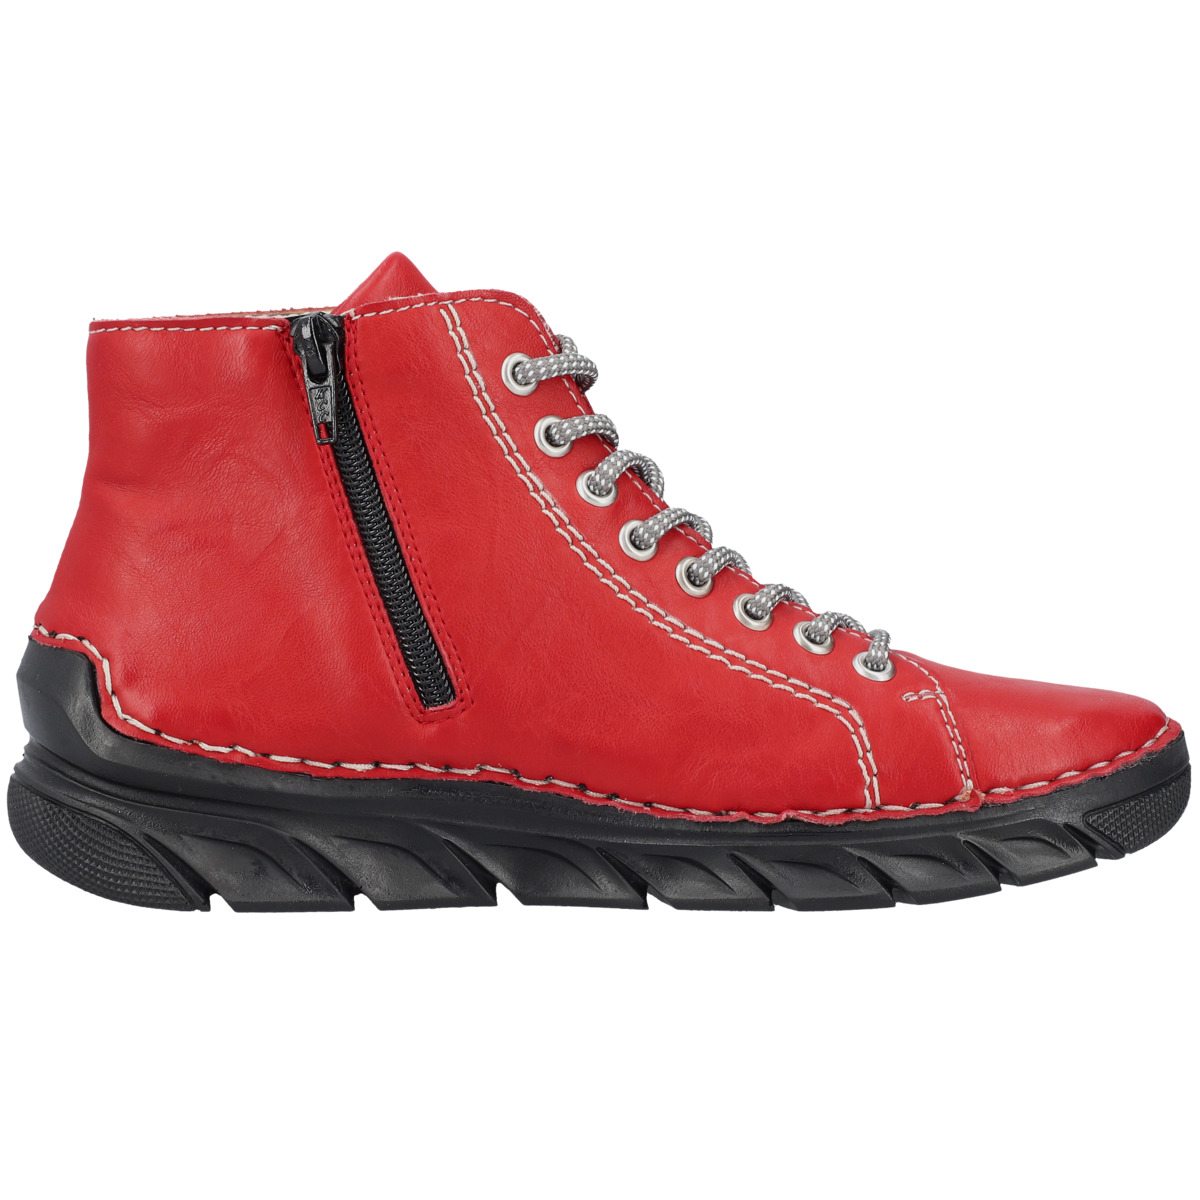 Rieker 55020 Boots rot